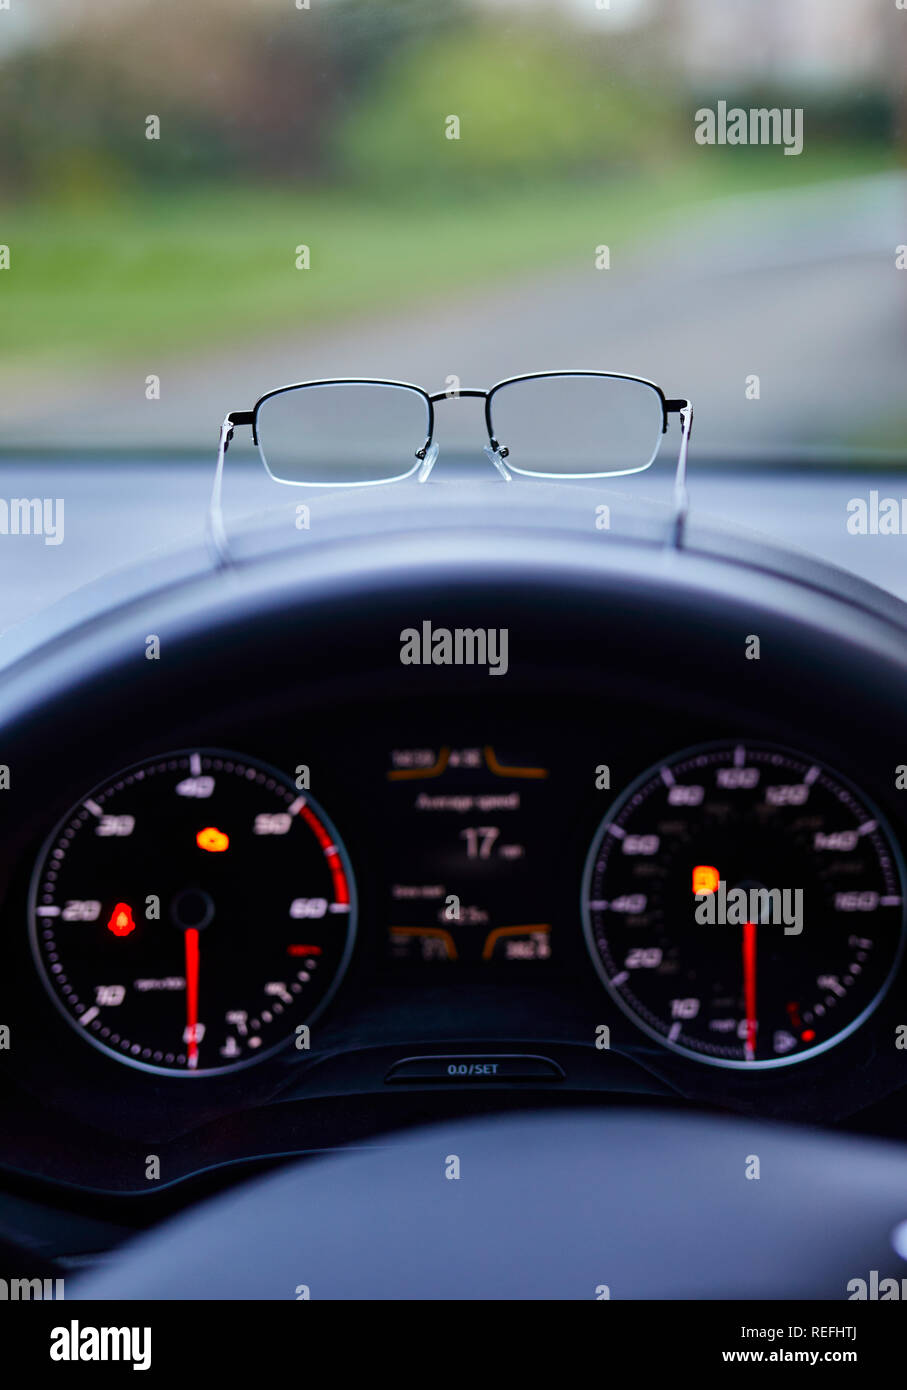 https://c8.alamy.com/compfr/refhtj/paire-de-lunettes-sur-le-tableau-de-bord-de-voiture-refhtj.jpg